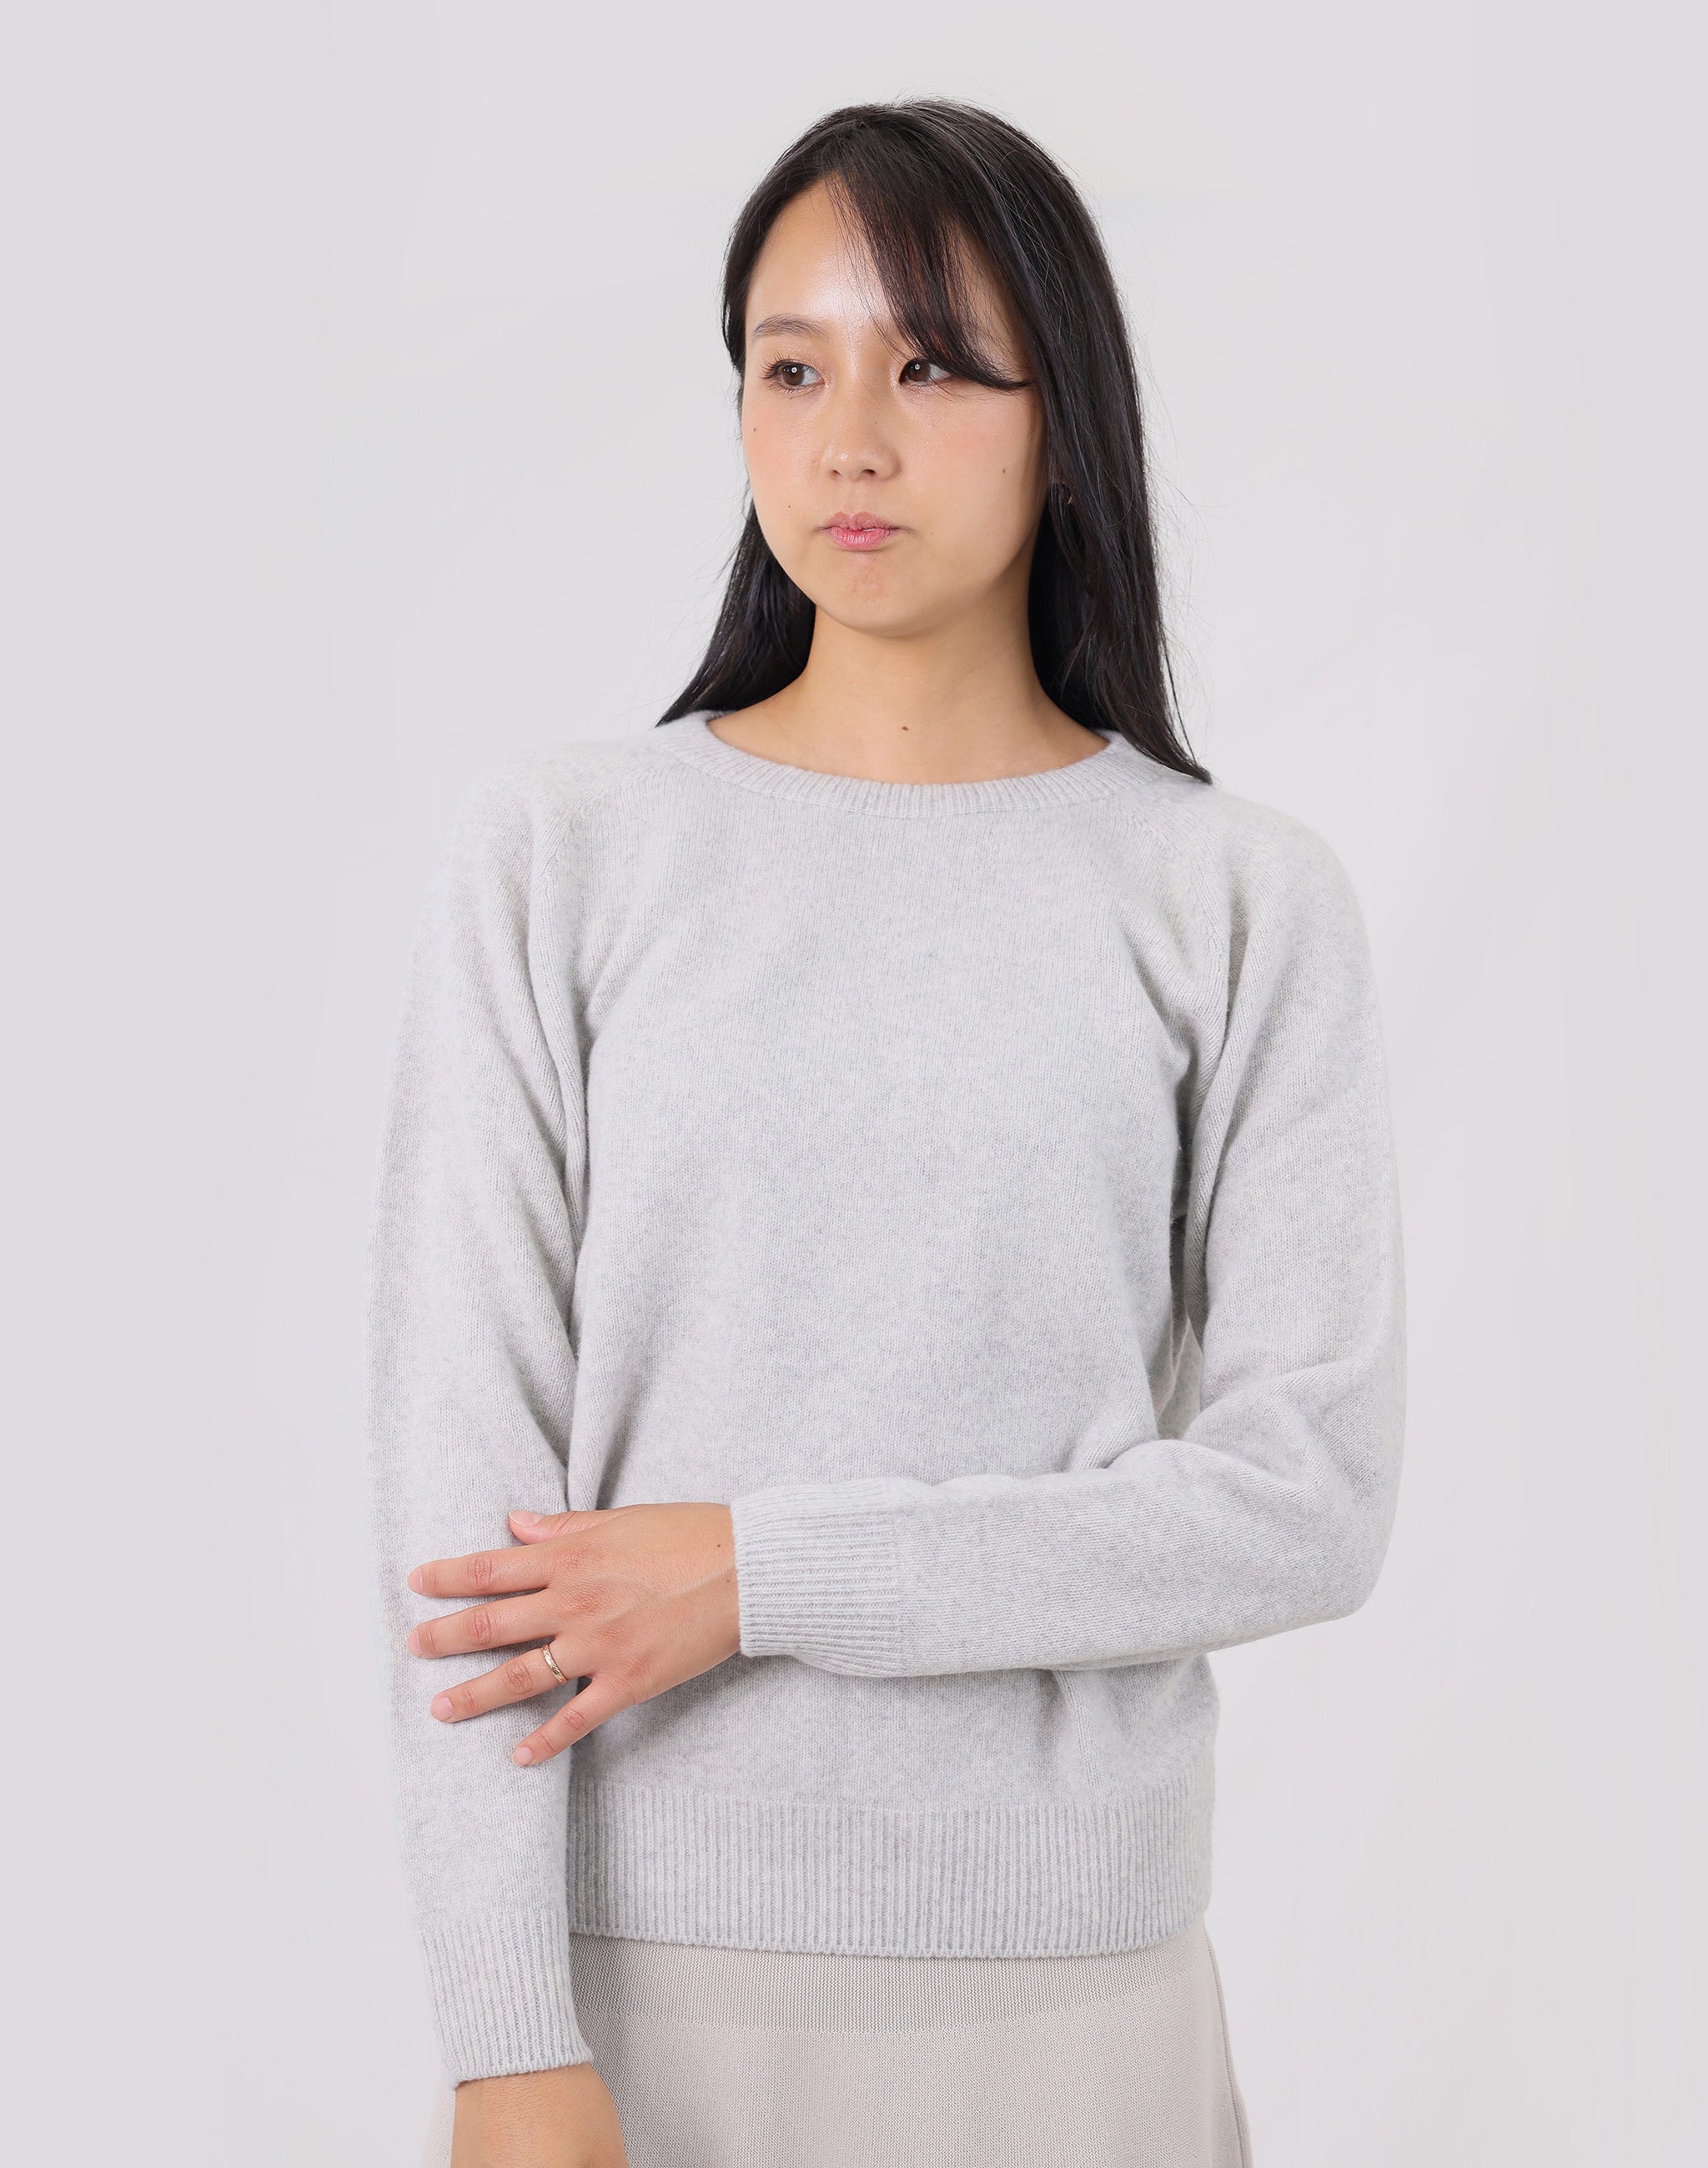 メリノウールクルーネックセーター 日本製 3Dニット レディース 長袖